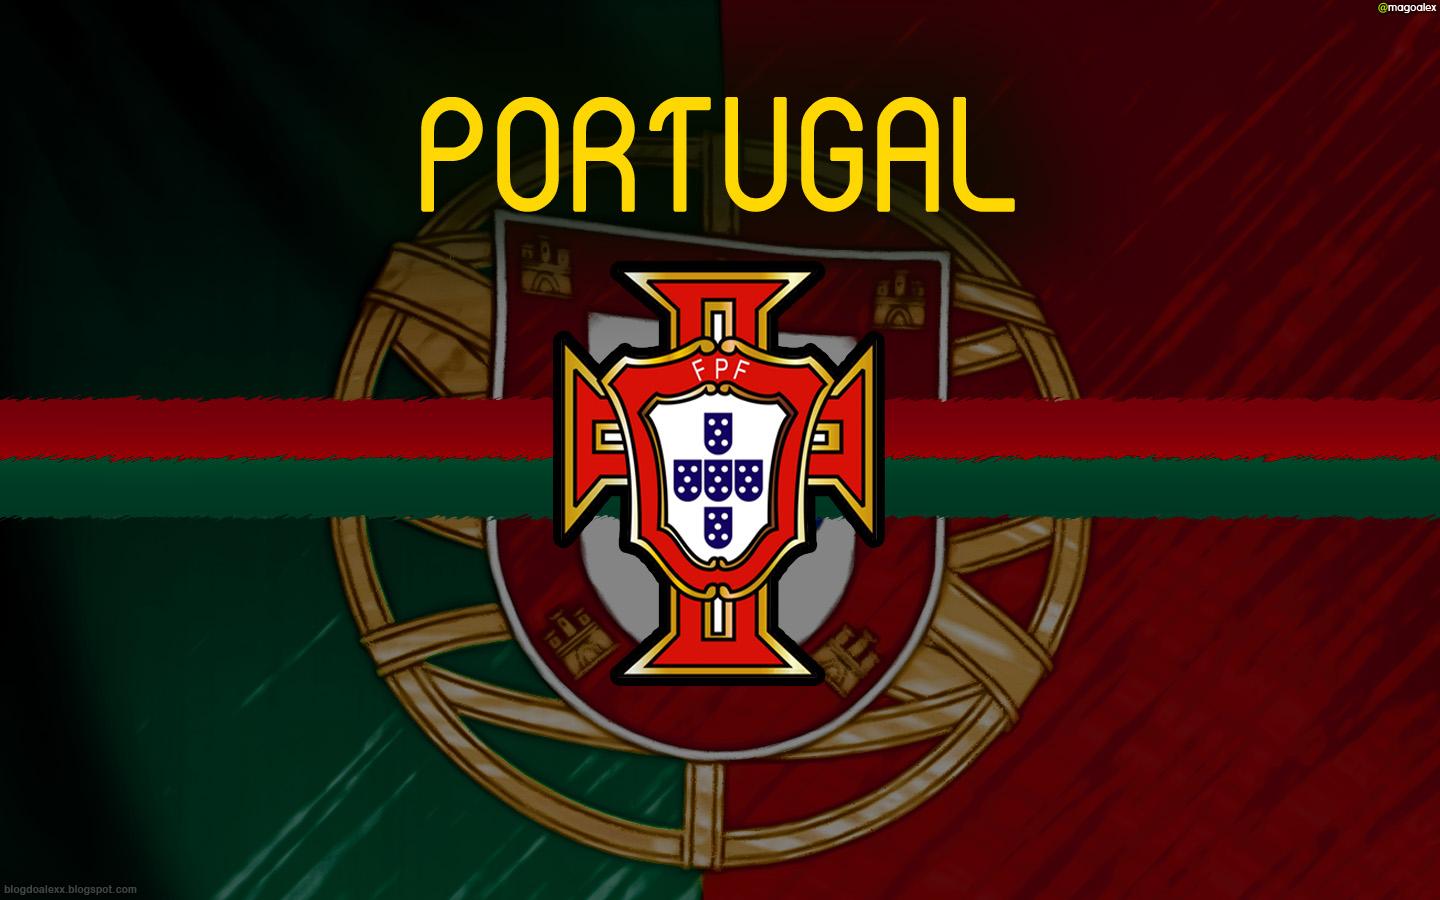 PORTUGAL [Wallpaper] | BLOG DO ALEXX - Jogos, Palmeiras e mais!